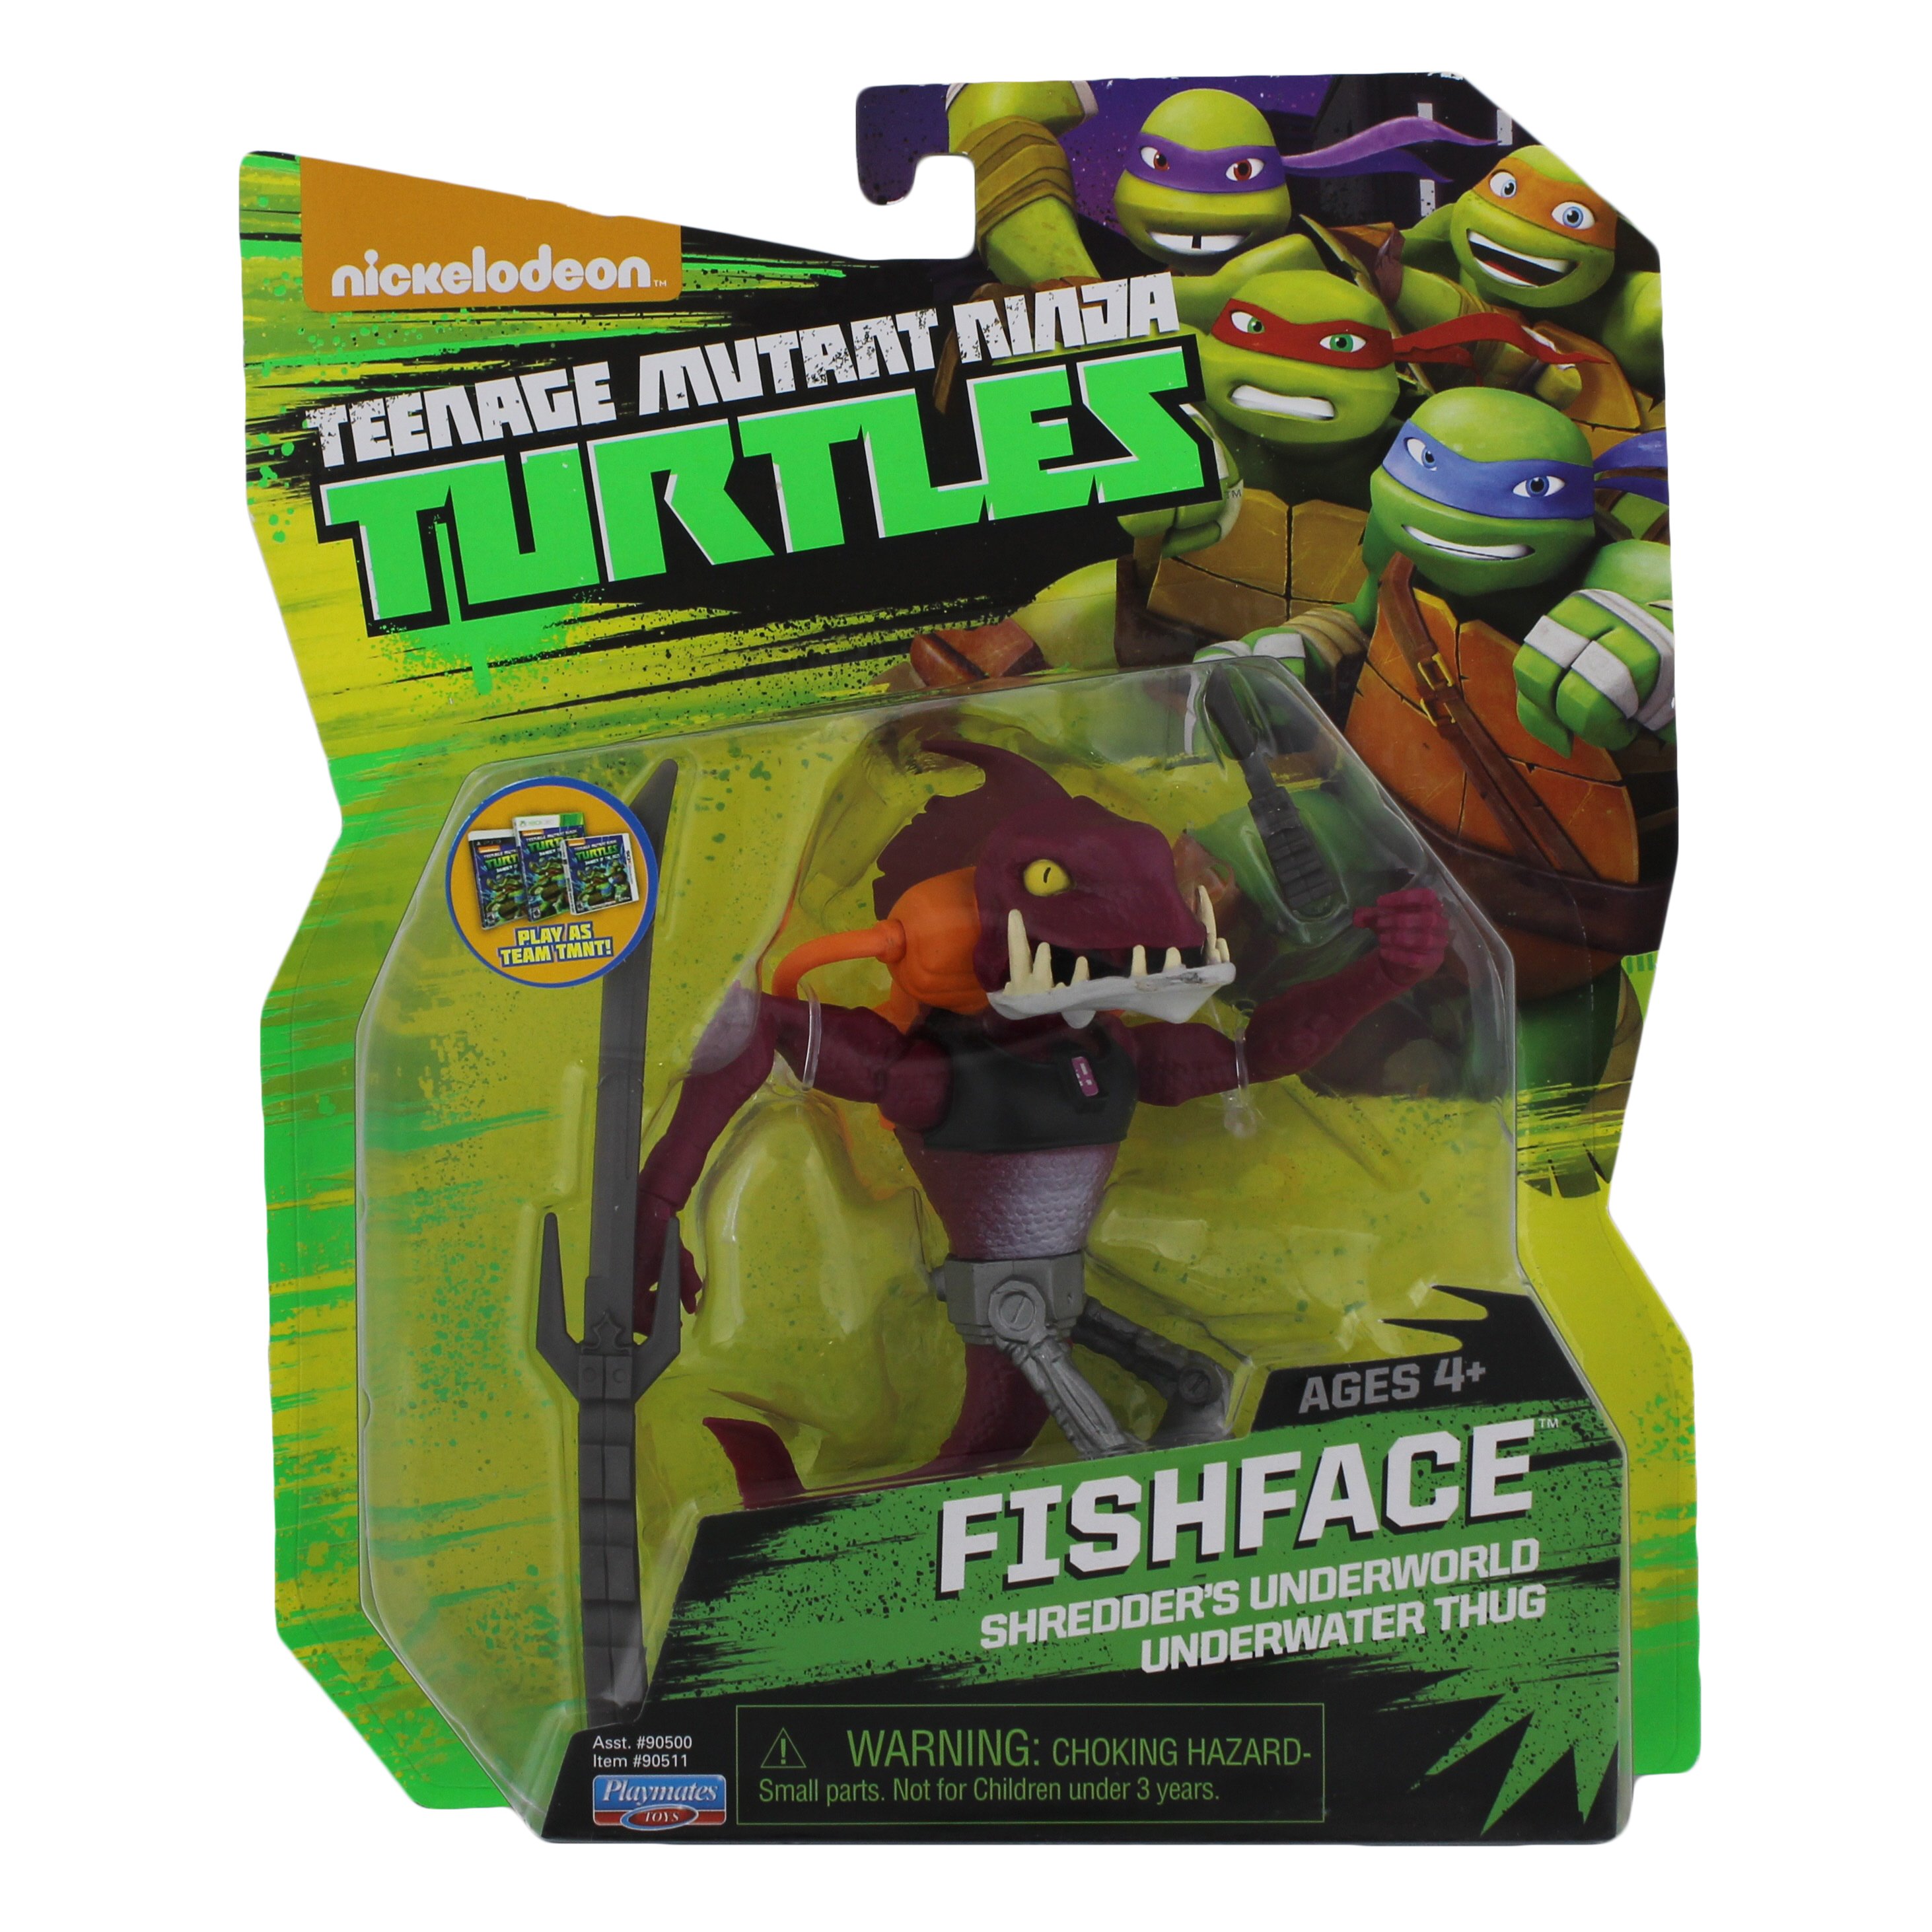 FISHFACE Teenage Mutant Ninja Turtles TMNT 5"  Playmates Toy Figure #t4 